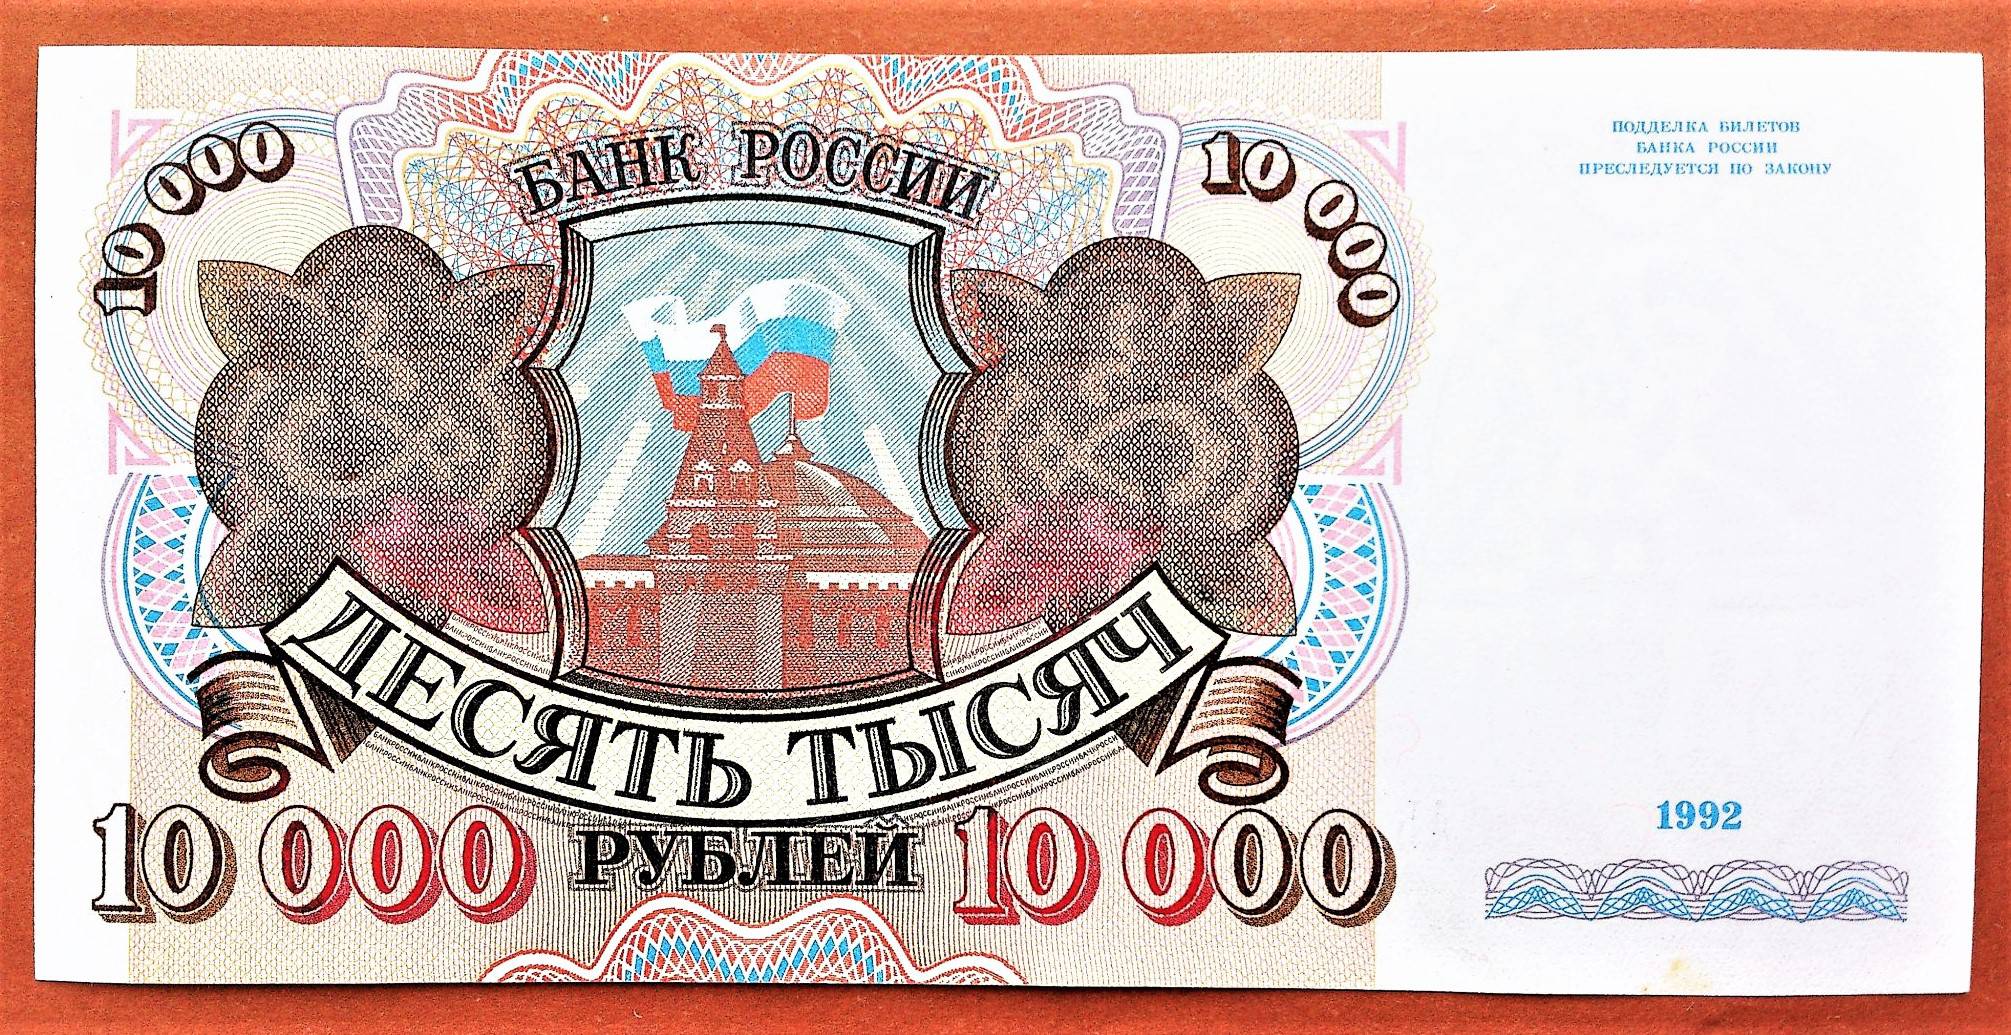 10 тыс нравится. 10000 Рублей 1993. Купюра 10 000 рублей 1993 года. 10000 Рублей 1993 года. СССР деньги 10000 рублей 1993.